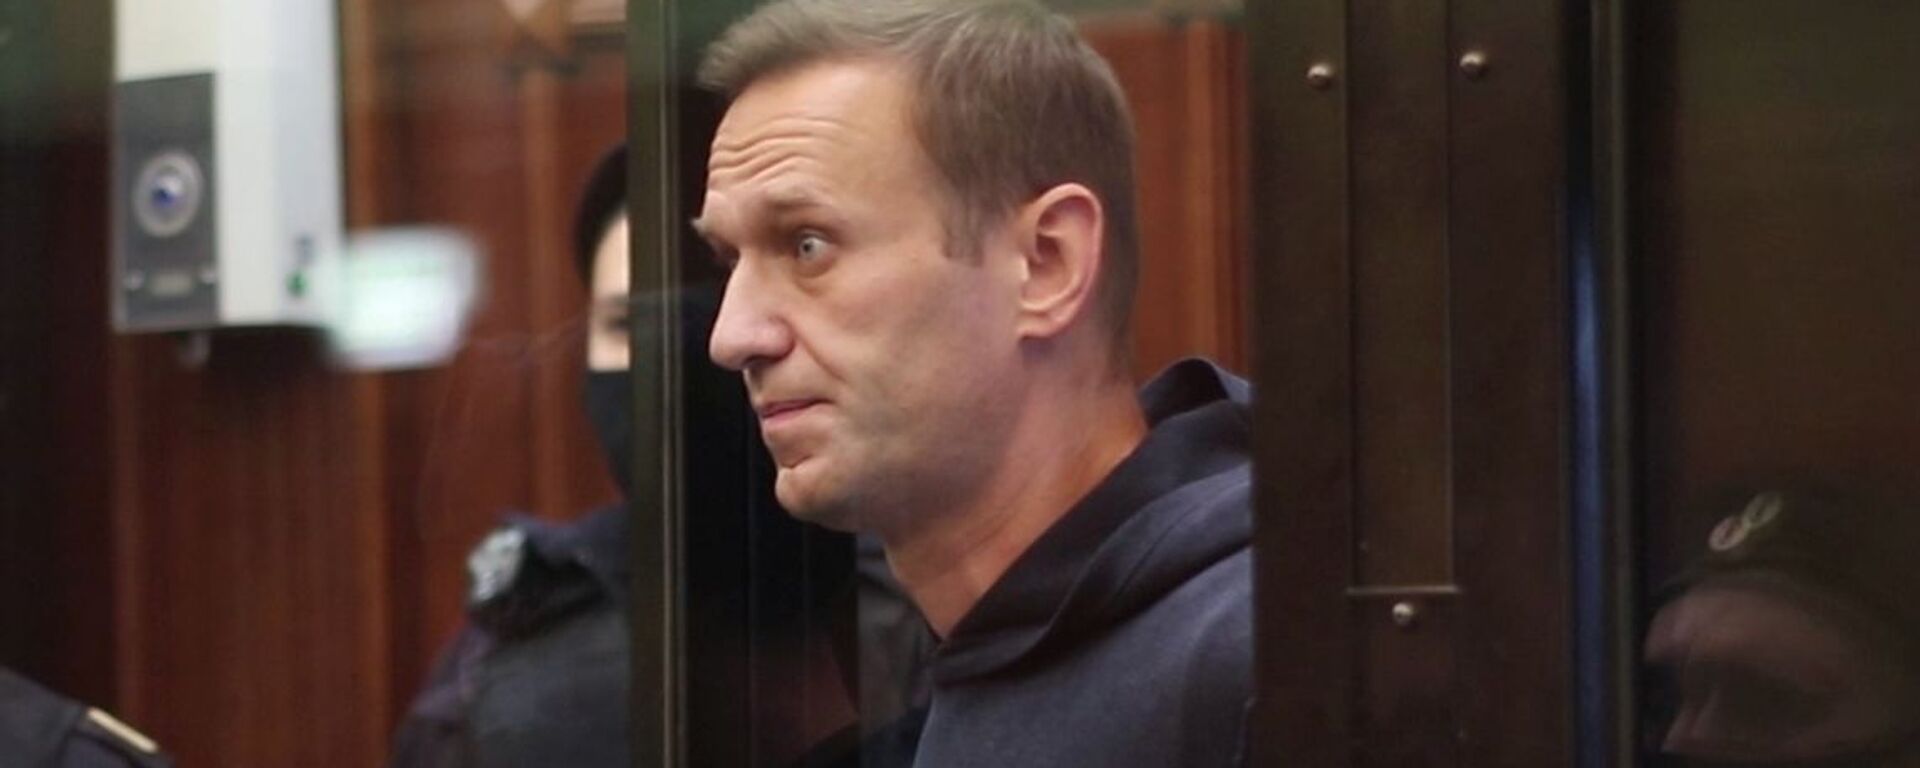 El bloguero opositor ruso, Alexéi Navalni - Sputnik Mundo, 1920, 07.04.2021